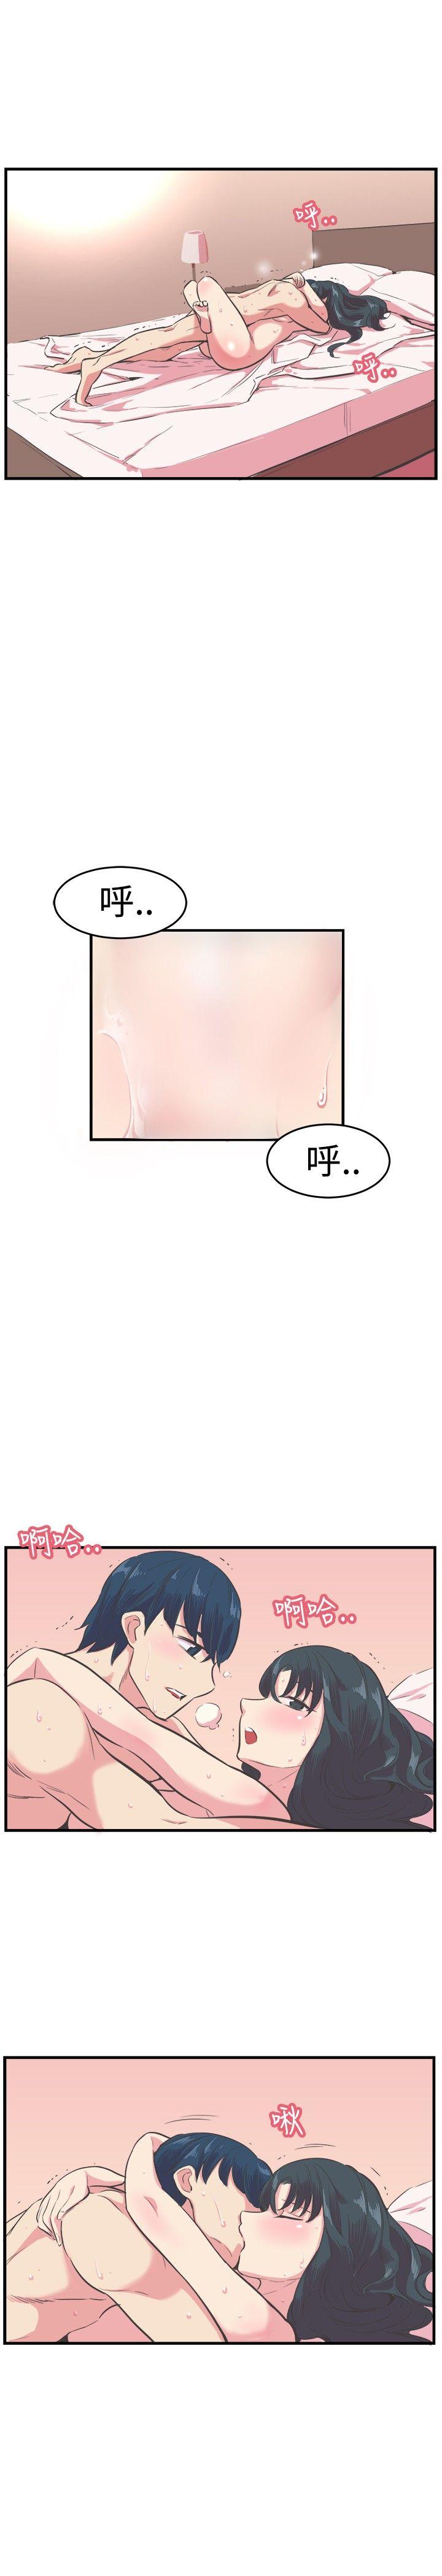 韩国污漫画 青春男女(完結) 第13话 1